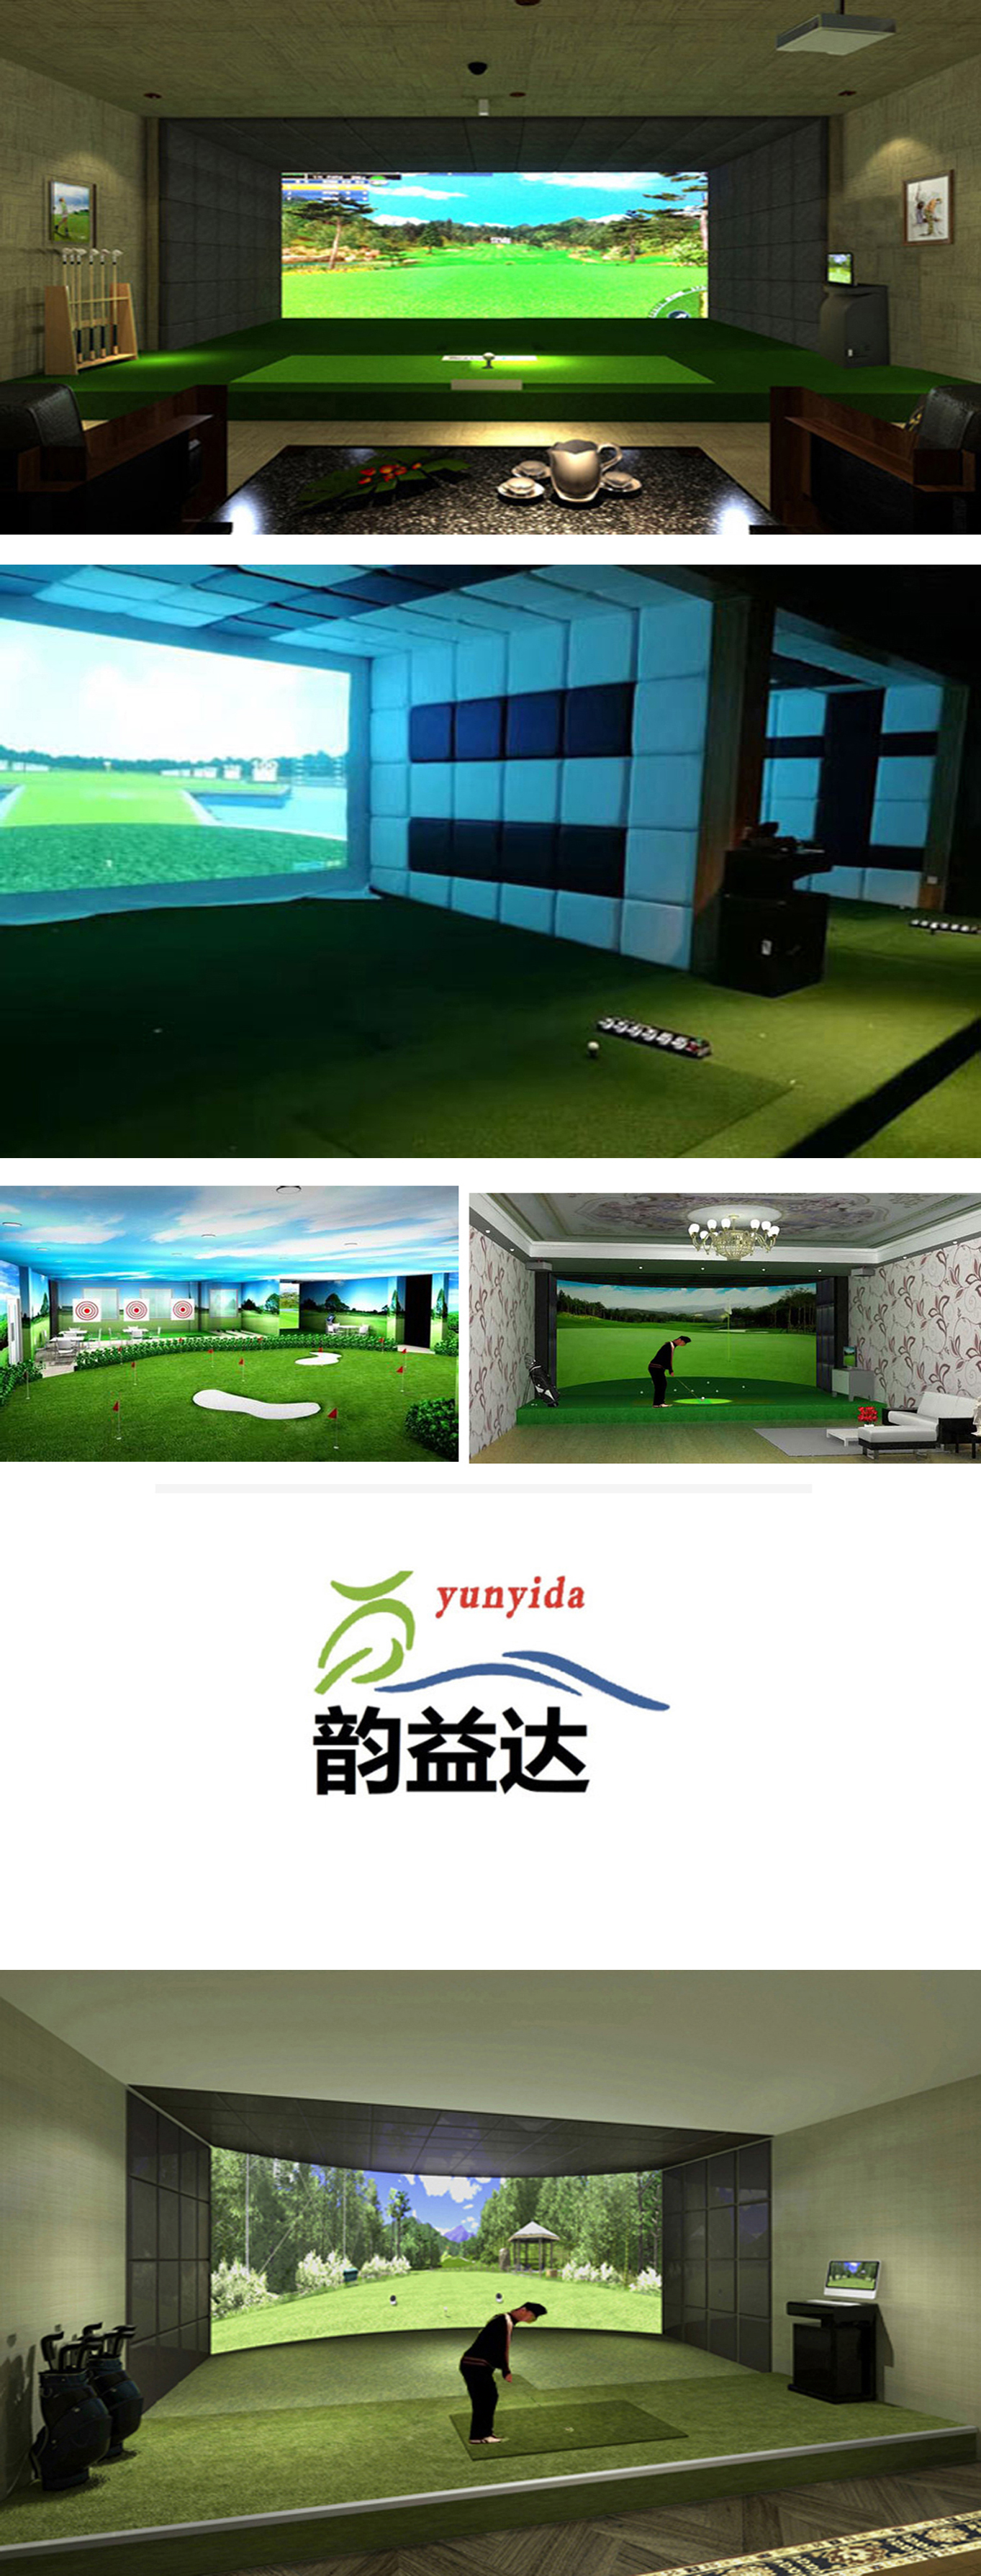 模拟室内高尔夫 01.jpg